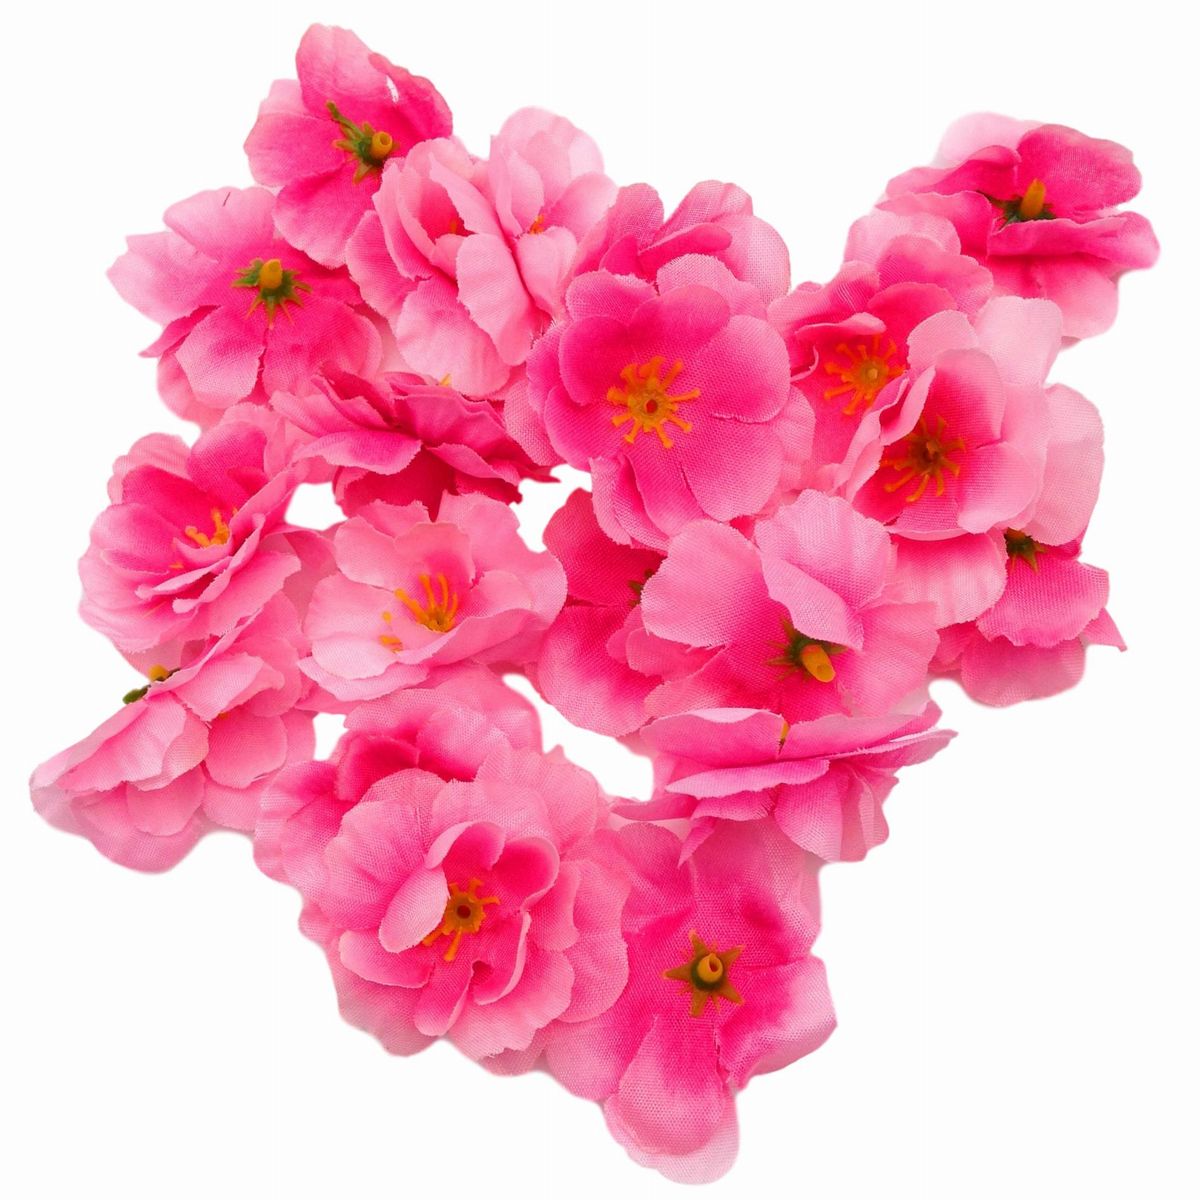 入学 格安店 お花見 イベント インテリア 結婚式 かわいいさくらの花 造花 上等 20個セット ピンク 桜 花のみ